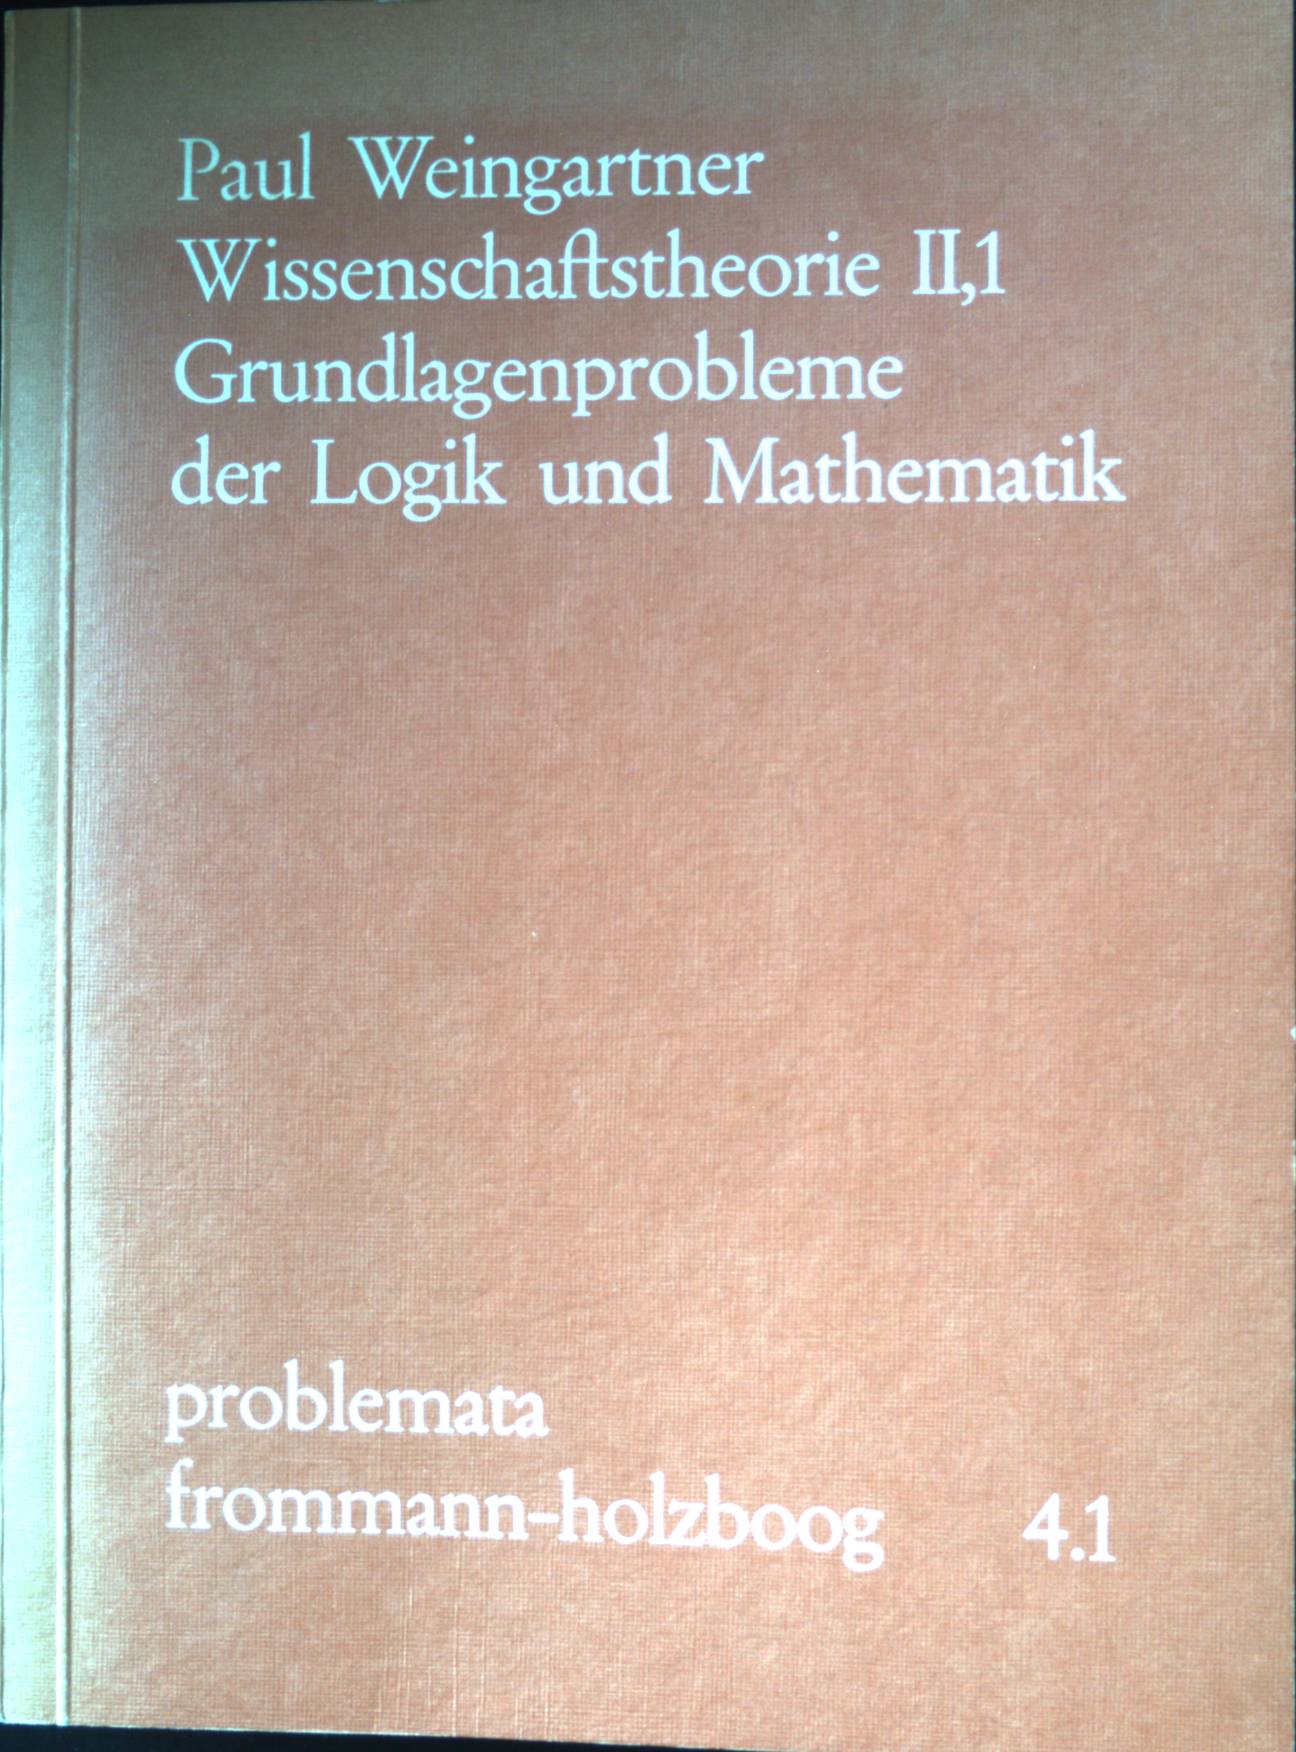 Wissenschaftstheorie; Teil: 2., Grundlagenprobleme der Logik und Mathematik. Band 1. / Problemata 4.1 - Weingartner, Paul und Günther Holzboog